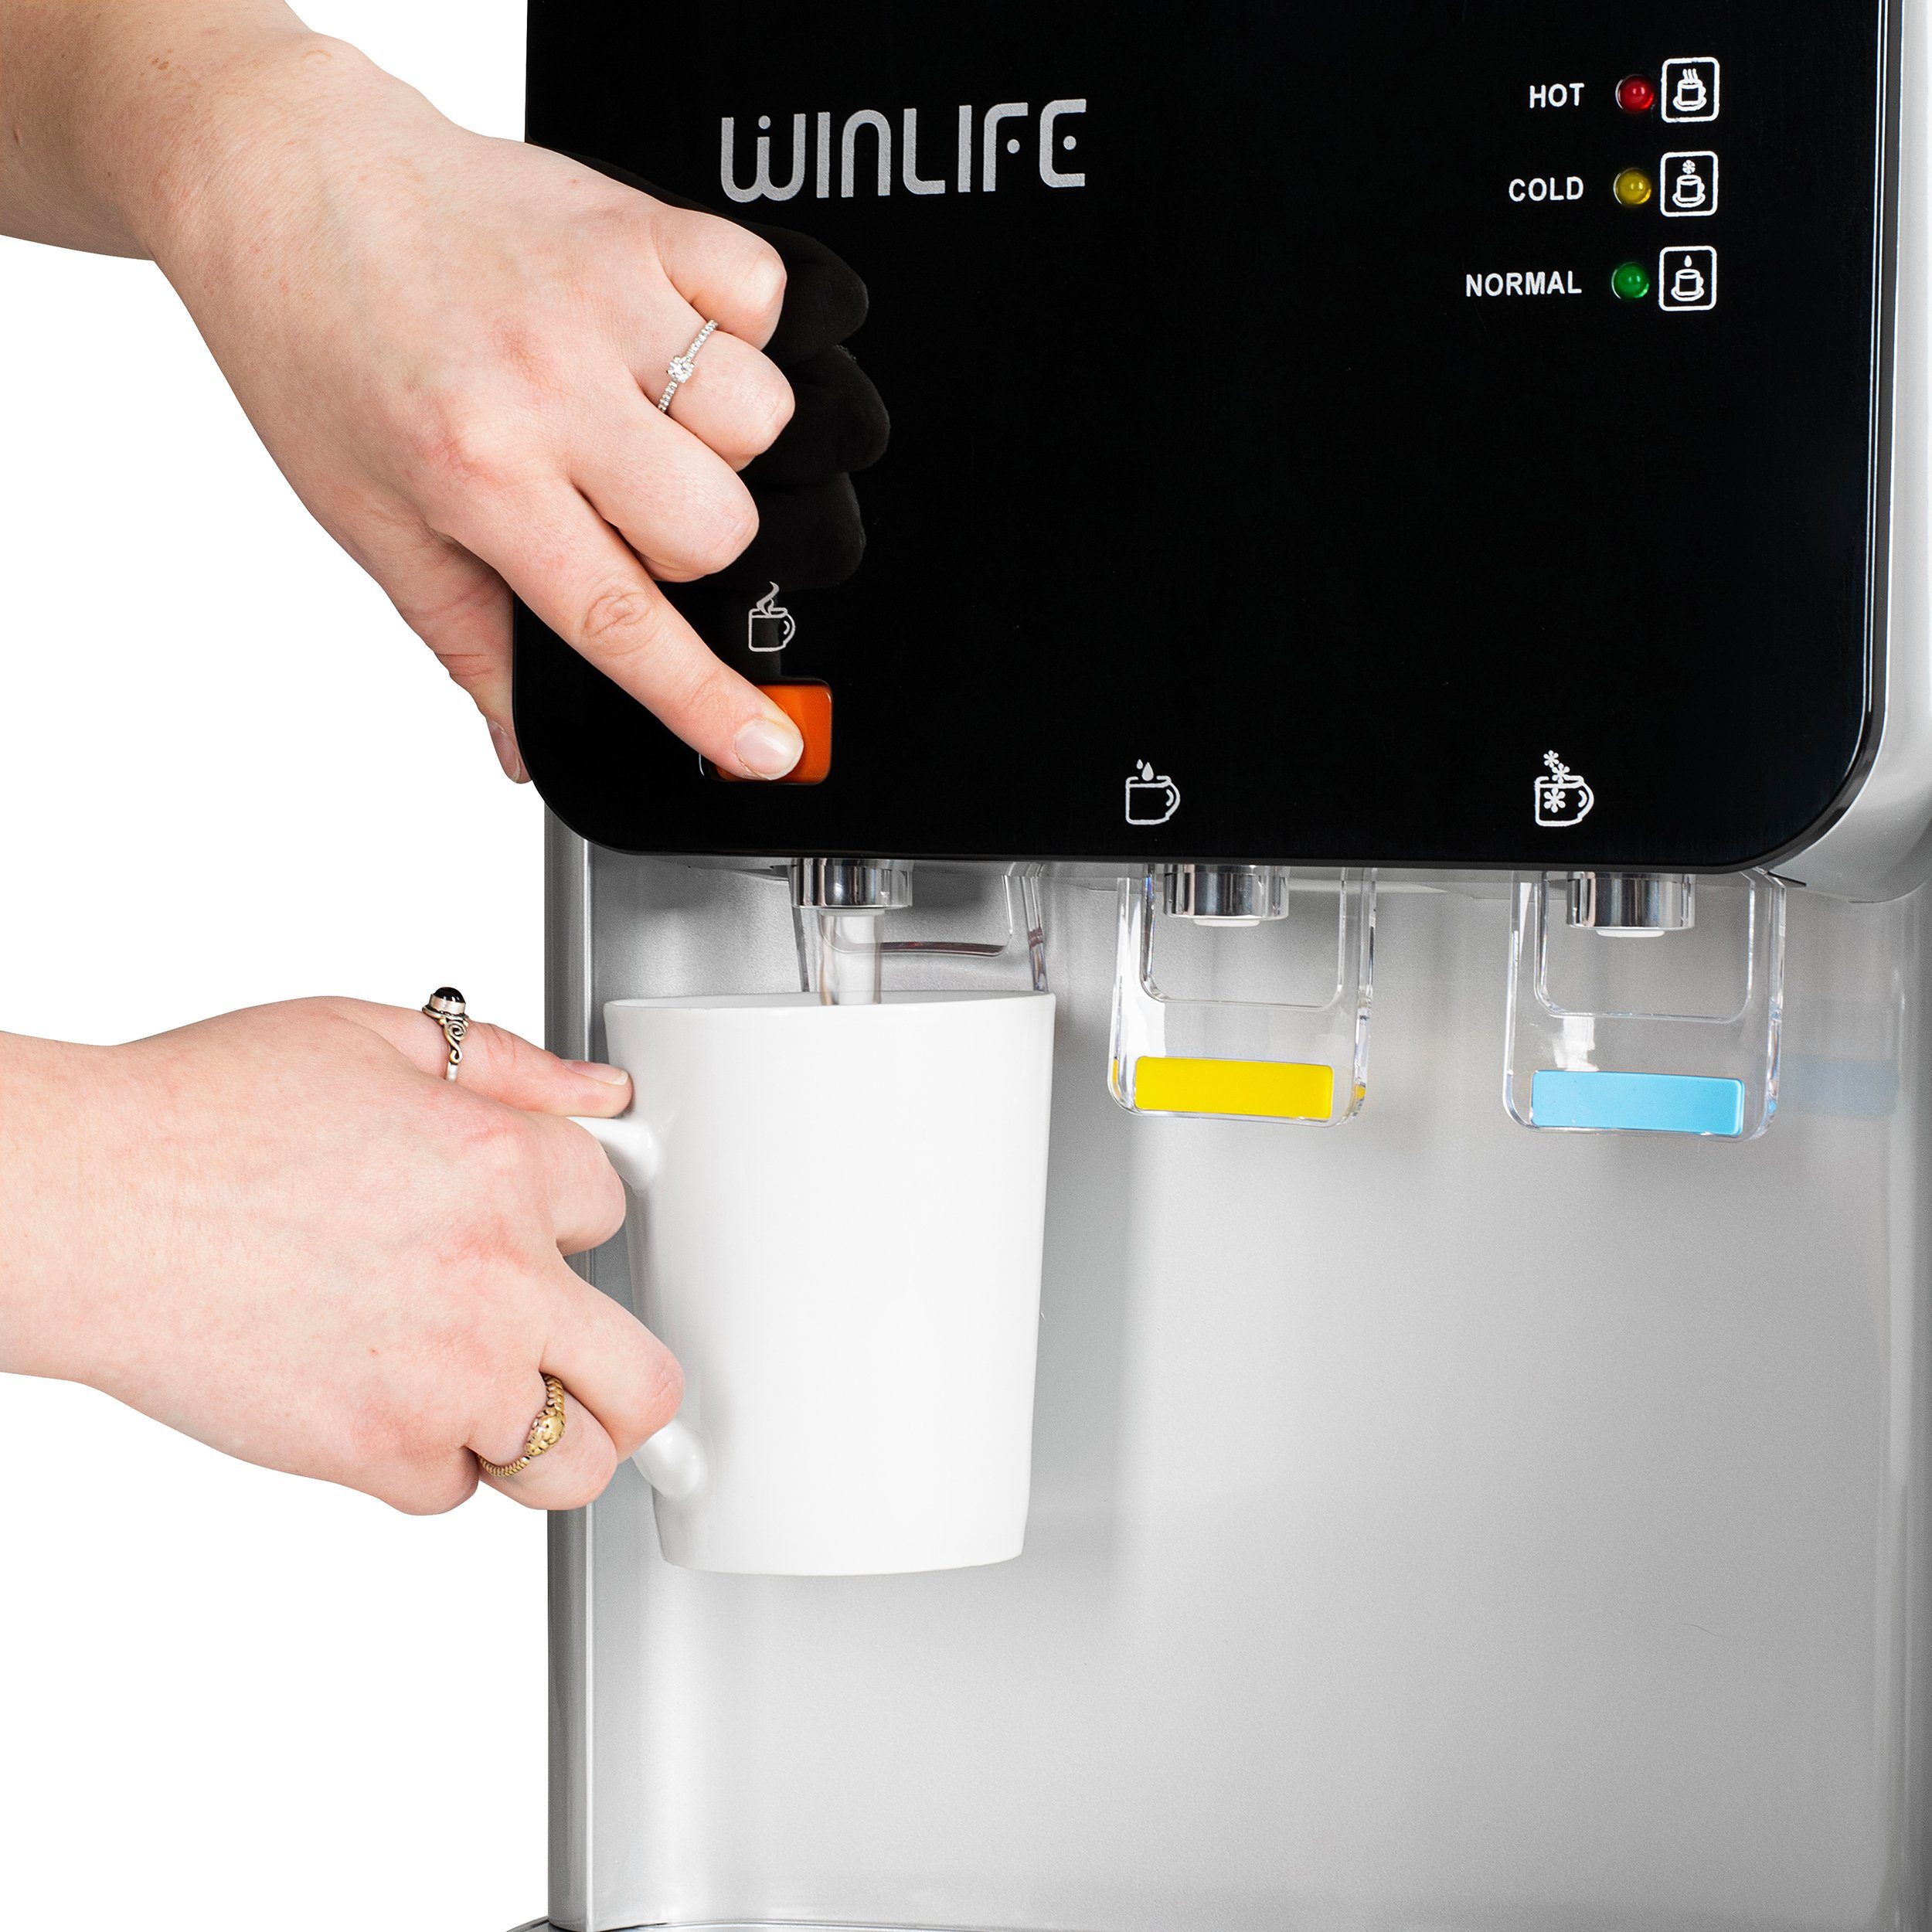 WINLIFE Heißwasserspender Getränke heiße Elektrischer & bis kalte Wasserspender mit für 5 Wasserspendergerät Liter, Kindersicherung Mini+Groß 20 Set Getränkespender